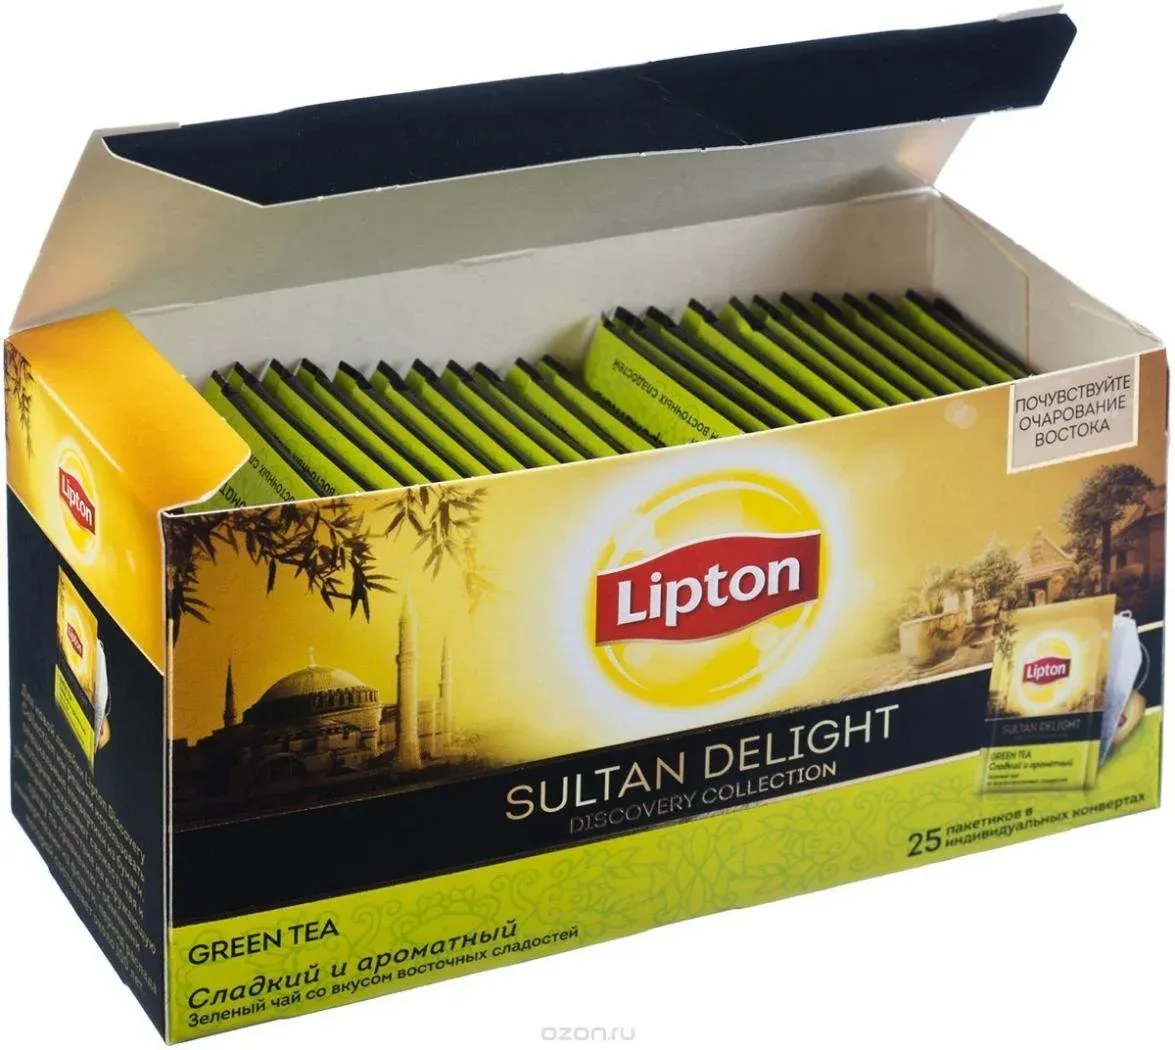 Чай в пакетиках купить в москве. Липтон Sultan Delight. Чай Липтон Sultan Delight. Зелёный чай Липтон в пакетиках. Чайный пакетик Lipton.